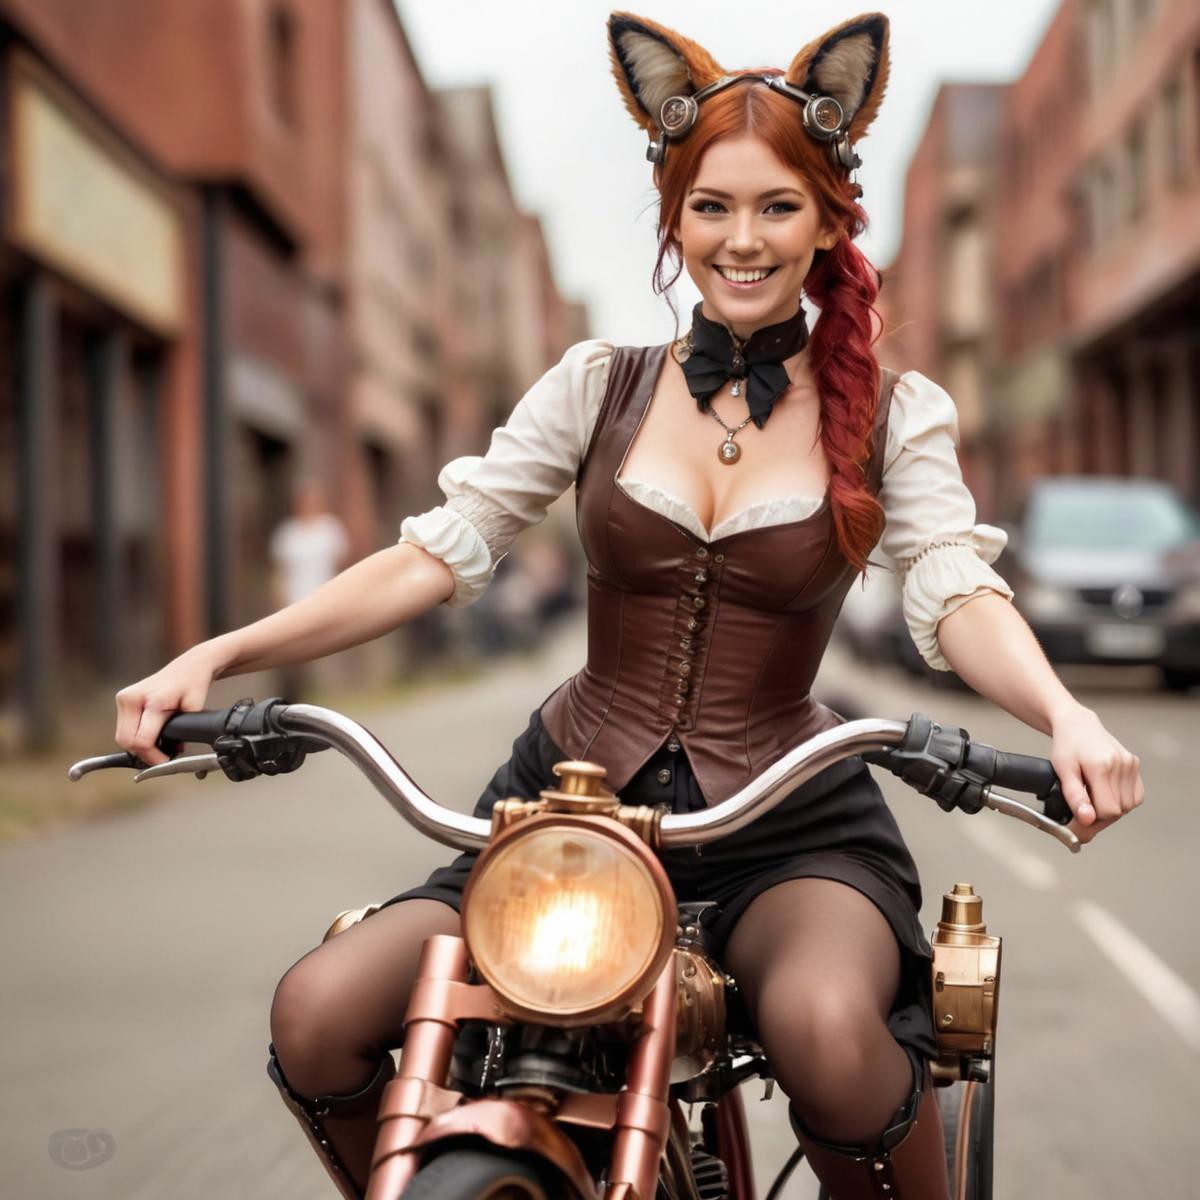 A steampunk_woman driving a bike, smiling, fox ears, red hair